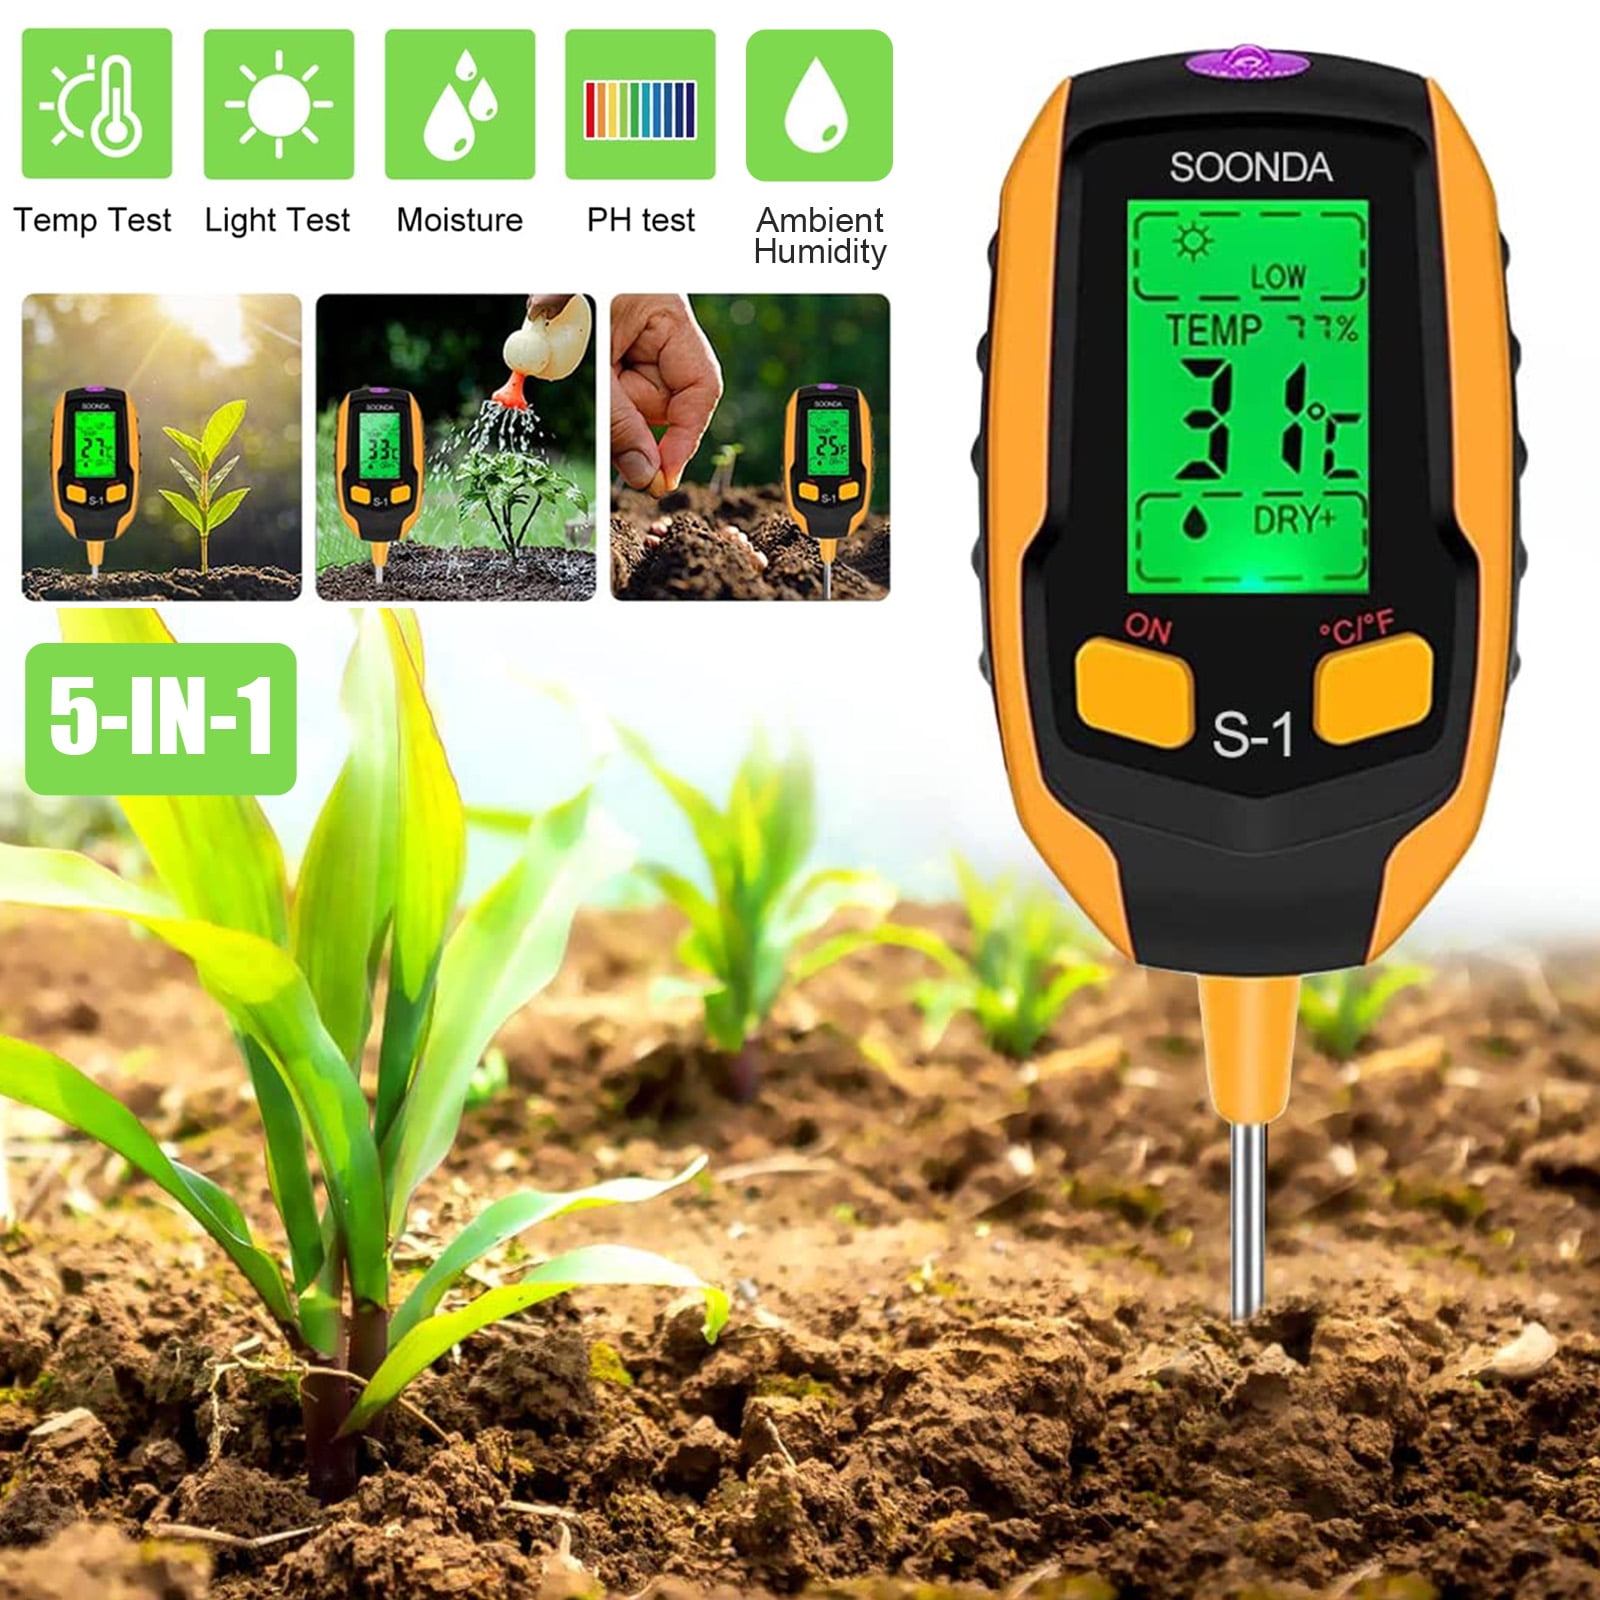 Digital soil moisture temperature meter tester hygrometer for garden plants 